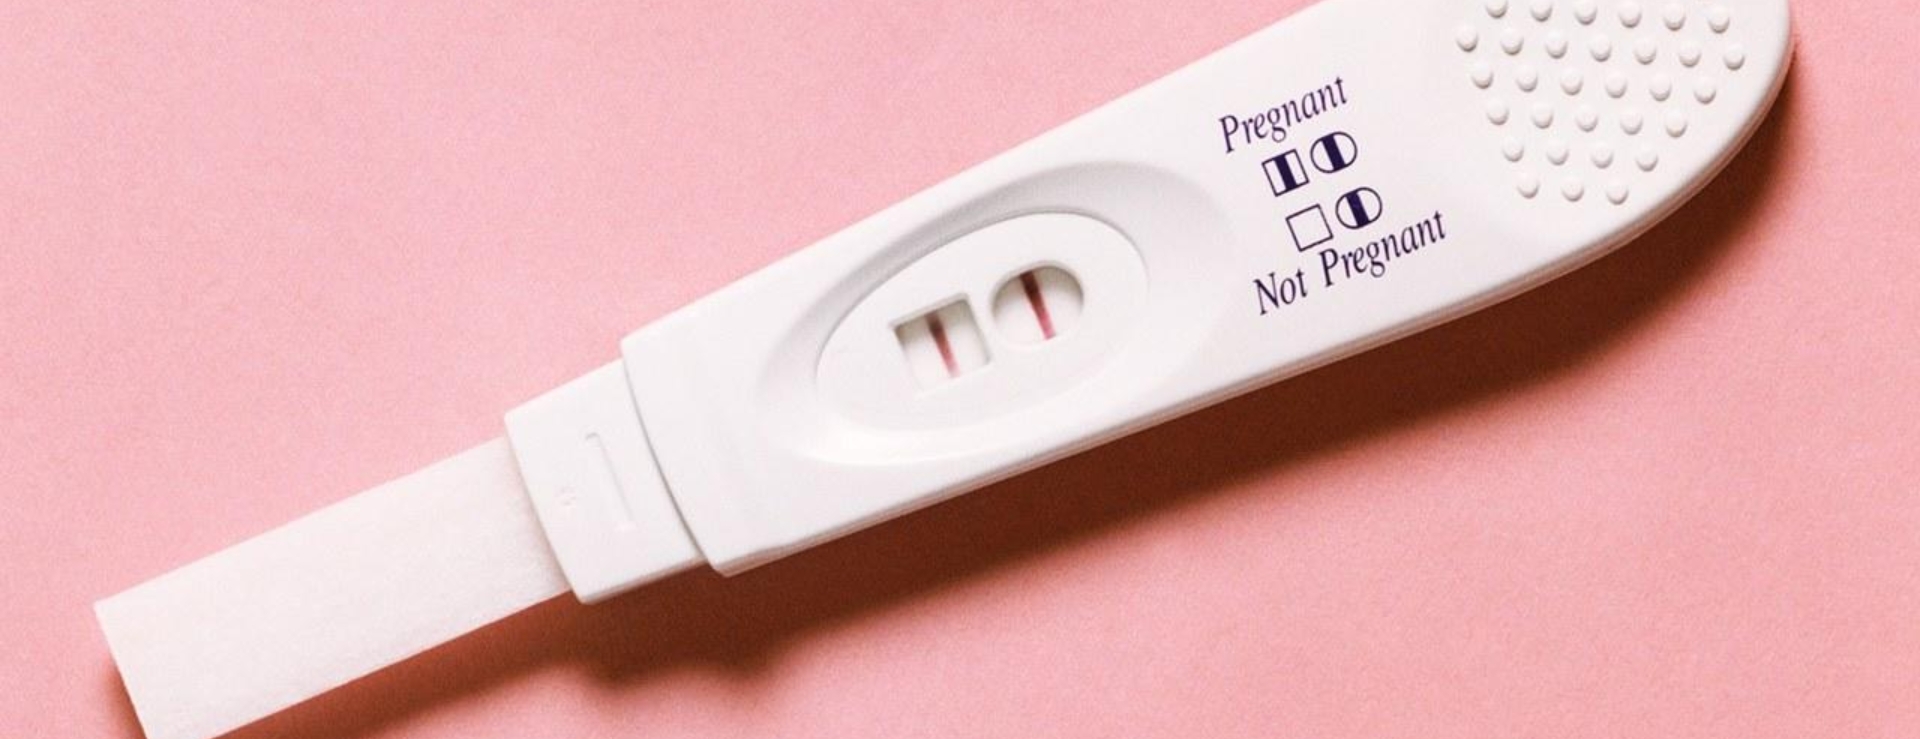 Hình ảnh que thử thai 2 vạch đậm hay mờ thì có thai? | Hoàn Mỹ